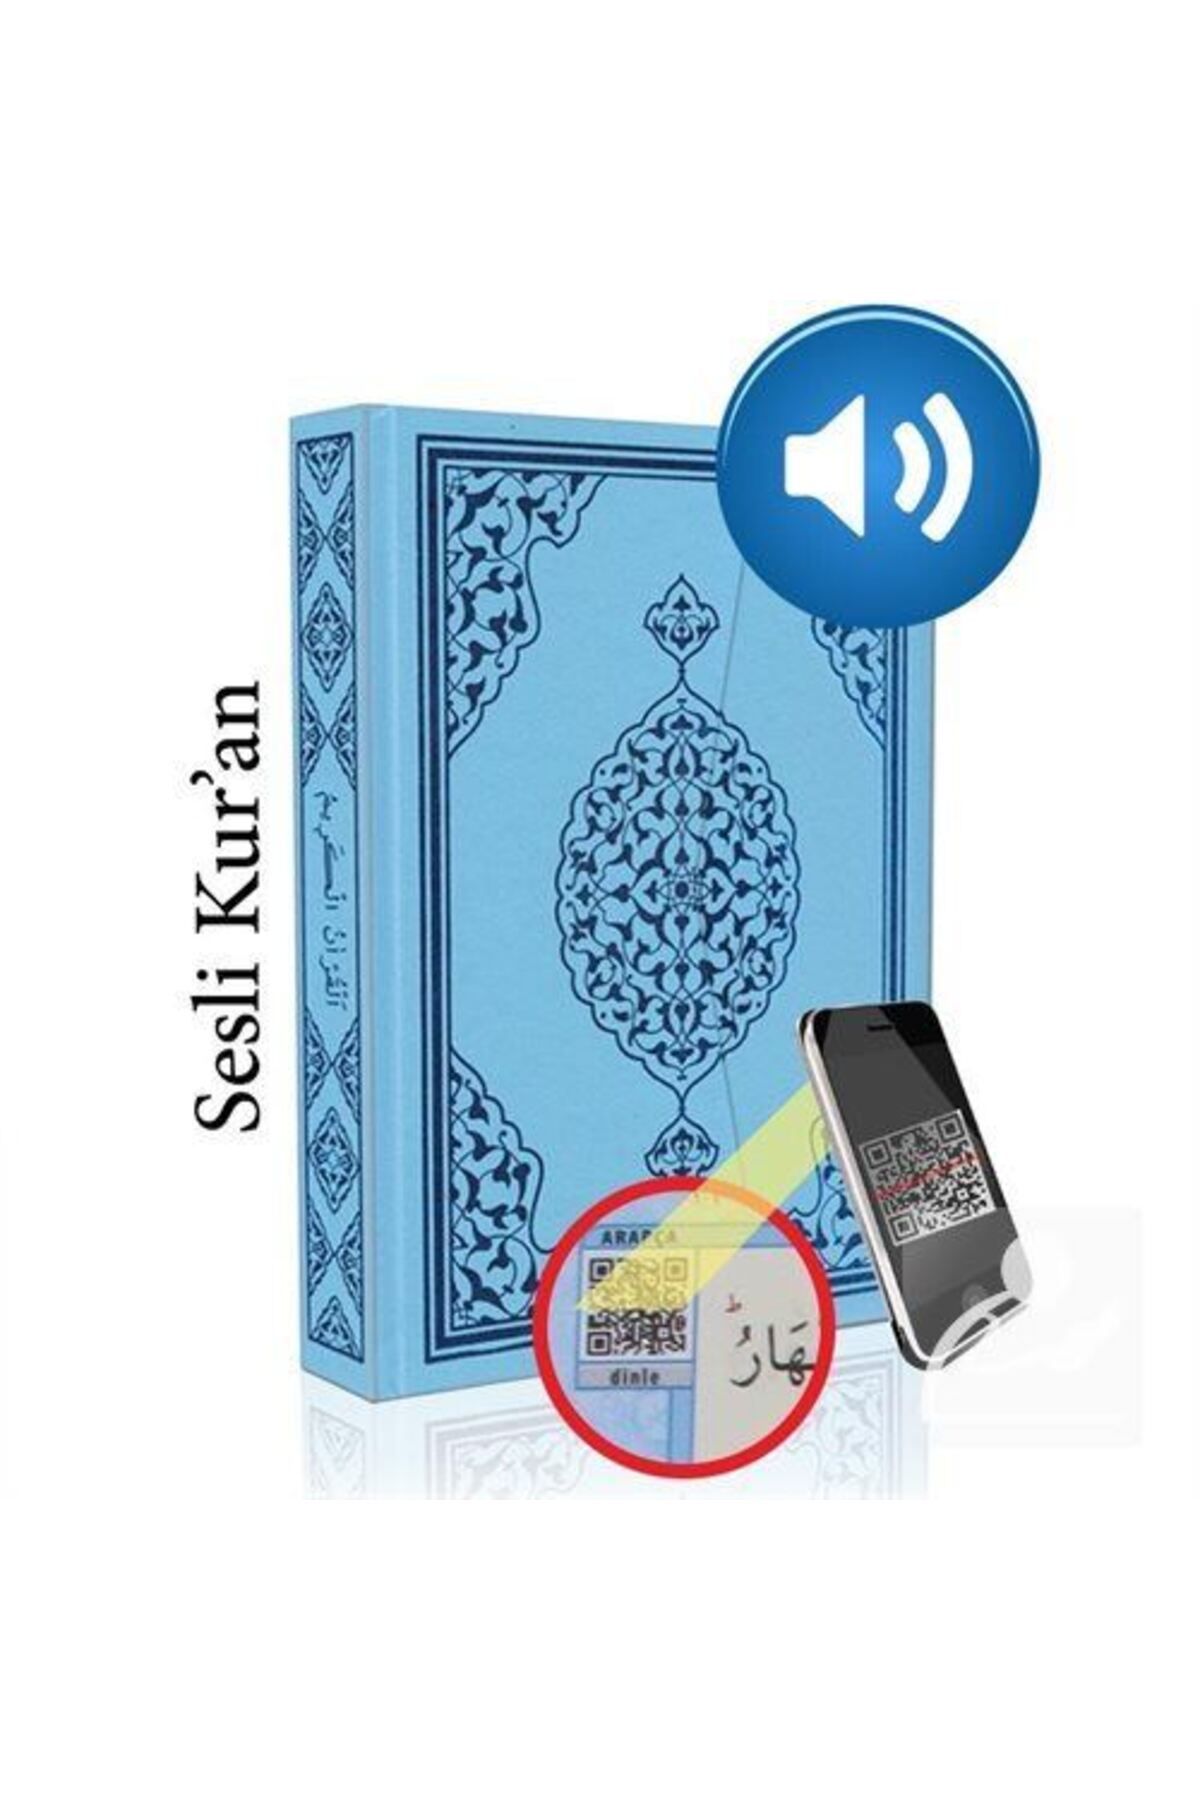 Merve Yayınları Kur'an-ı Kerim Bilgisayar Hatlı Mavi Renk Rahle Boy (KUR-AN 013) Sesli Kur-an